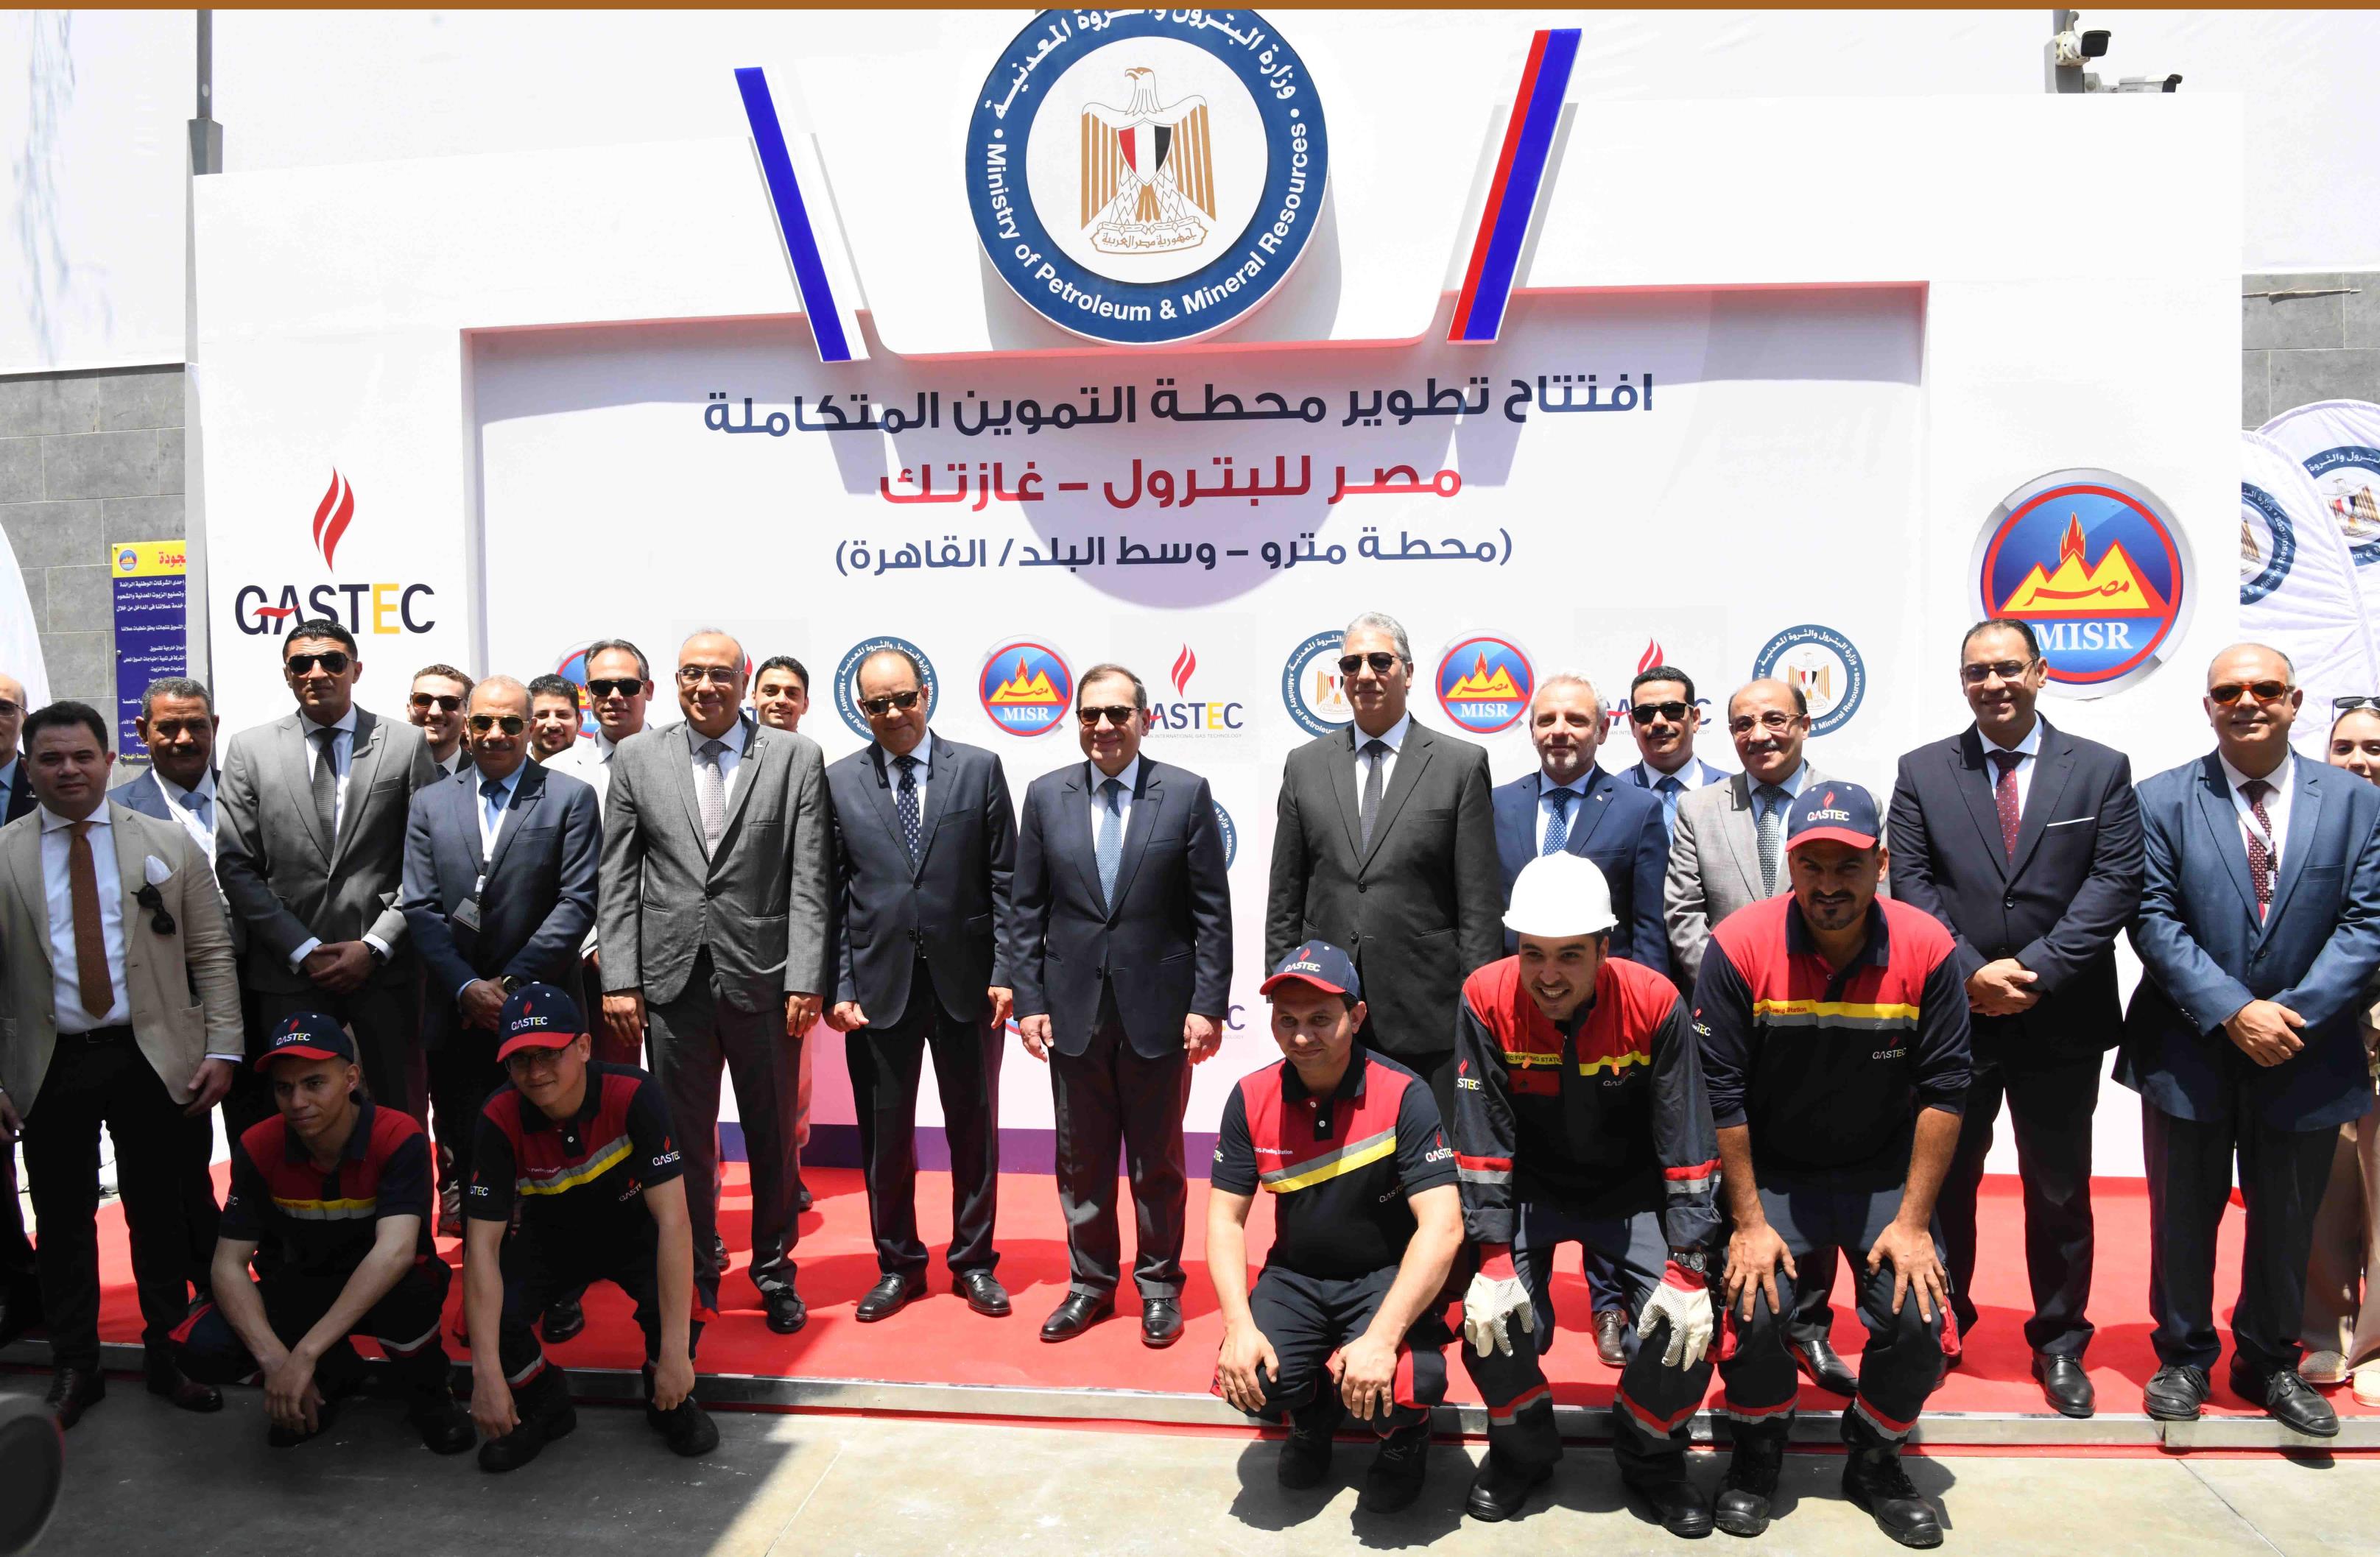   (أغسطس ٢٠٢٣)افتتاح محطة غازتك - مصر للبترول بوسط البلد